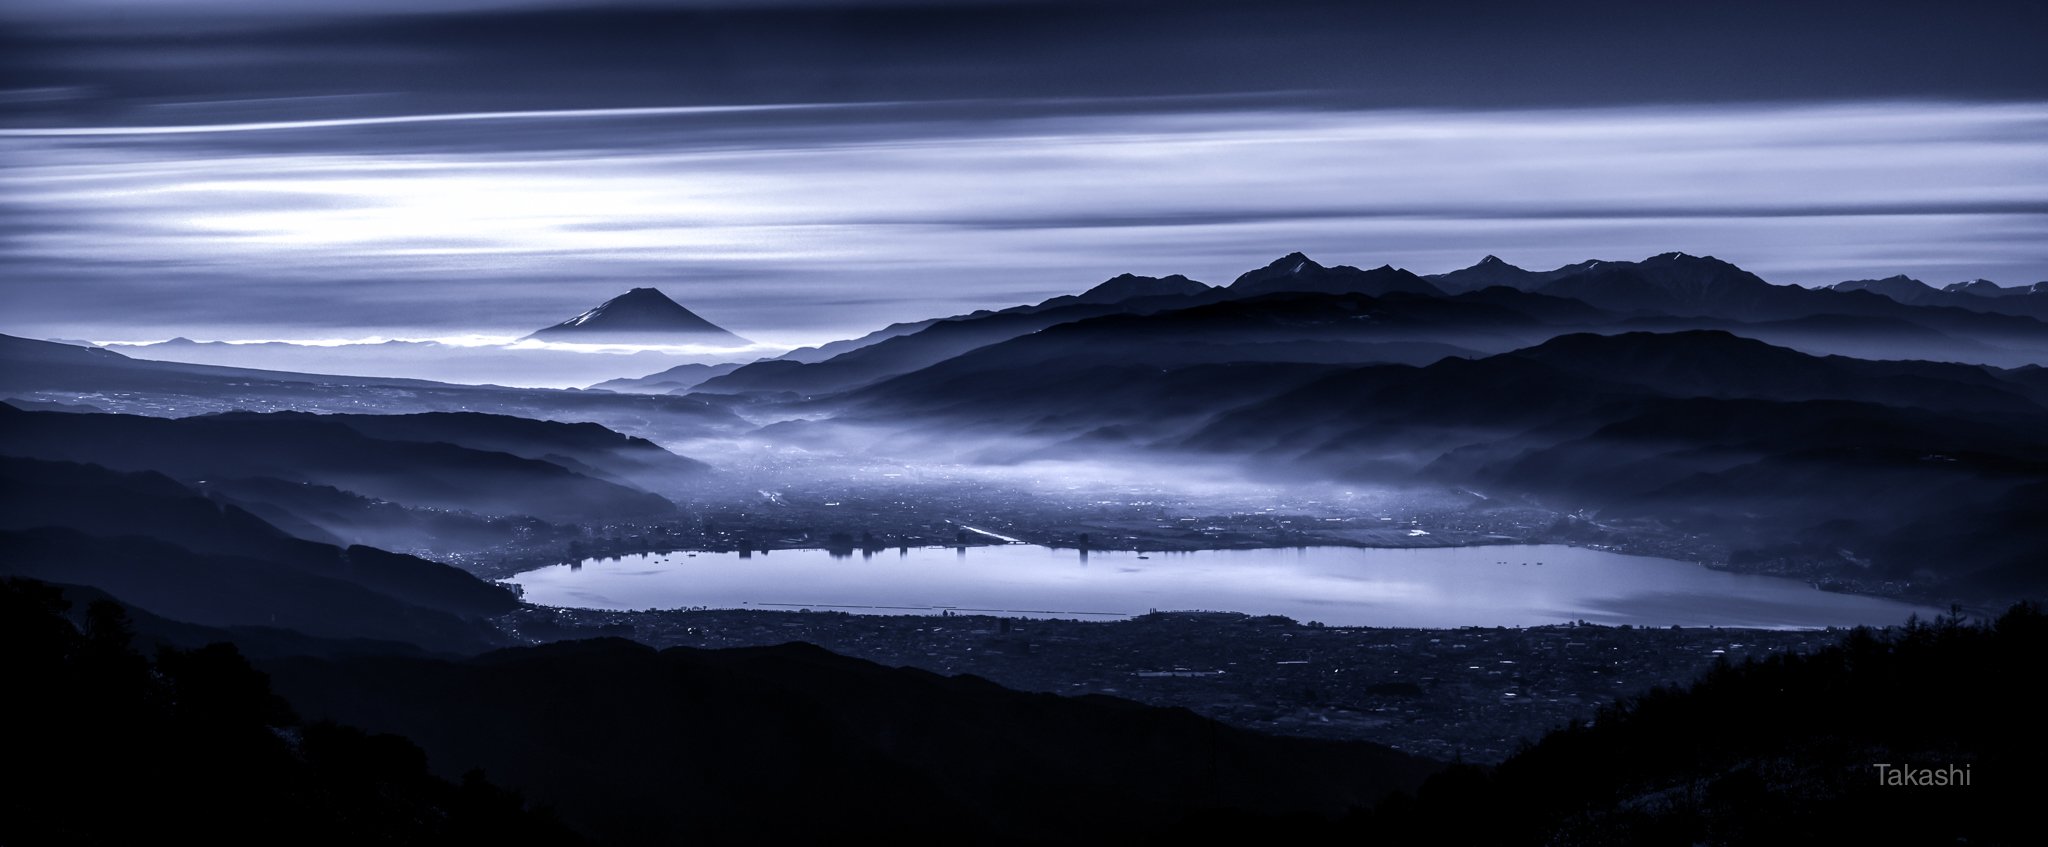 Fuji,mountain,Japan,cloud,lake,blue,morning,, Takashi